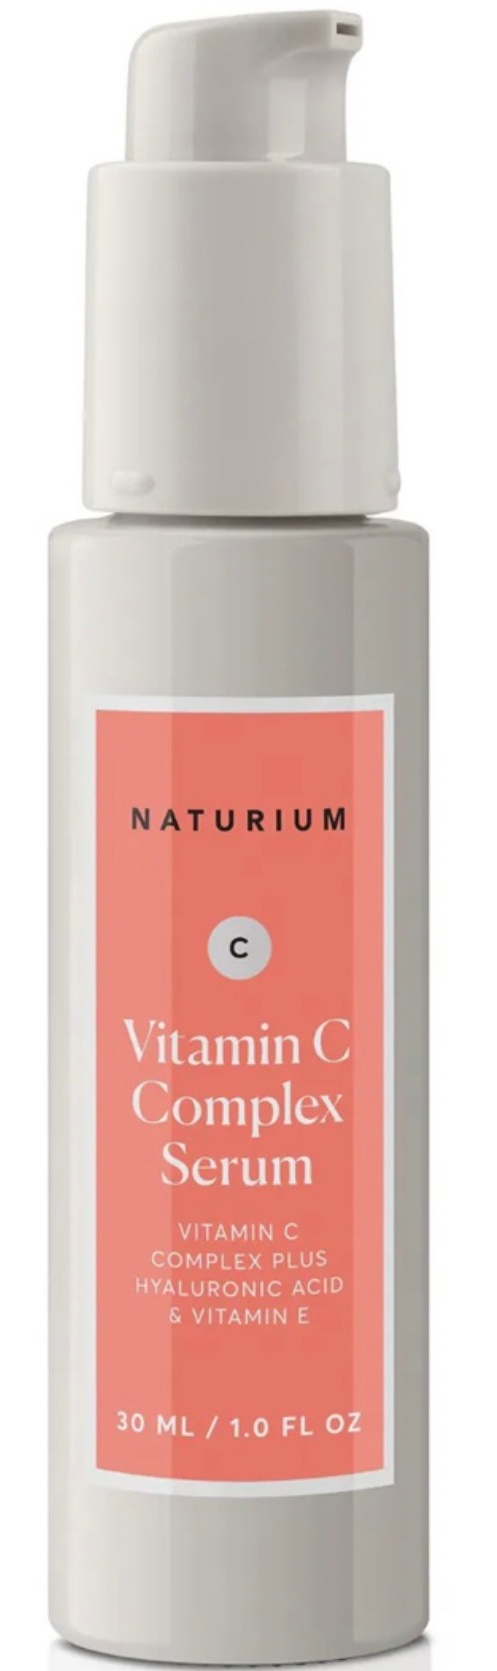 naturium Vitamin C Serum Complex